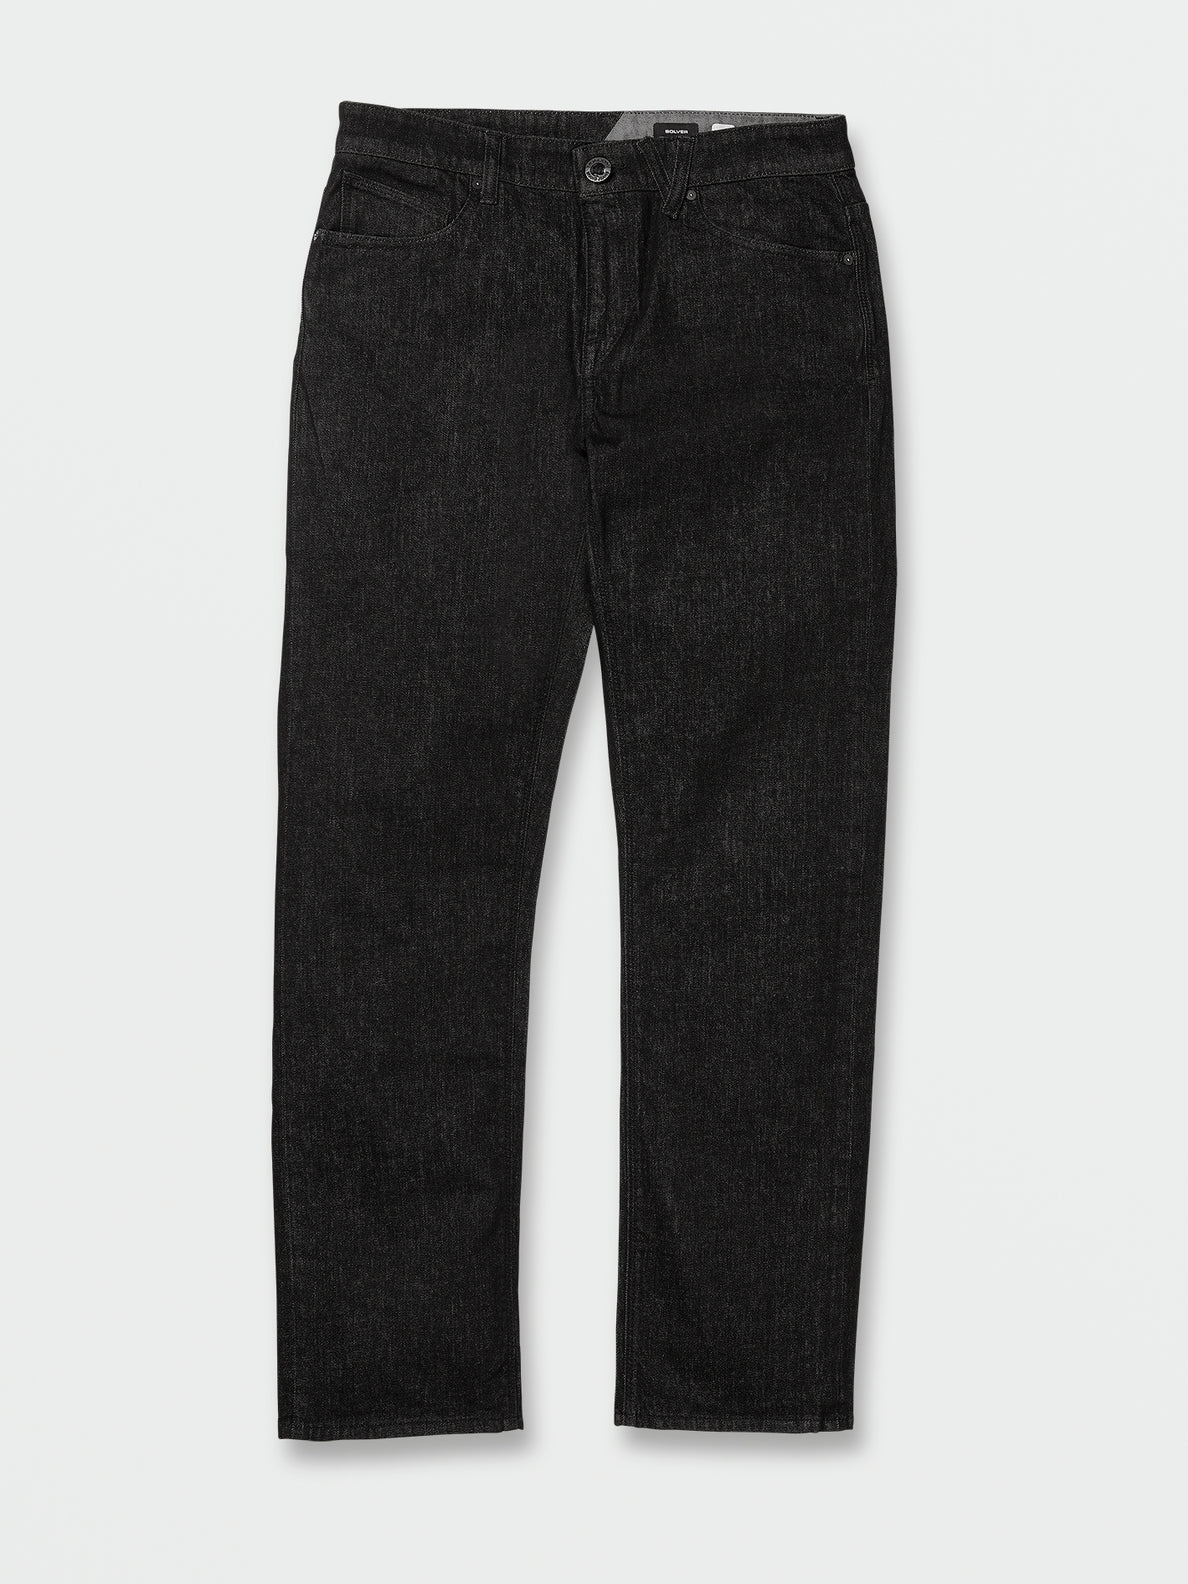 V Solver Modern Fit Stretch Jeans - Rinsed Black